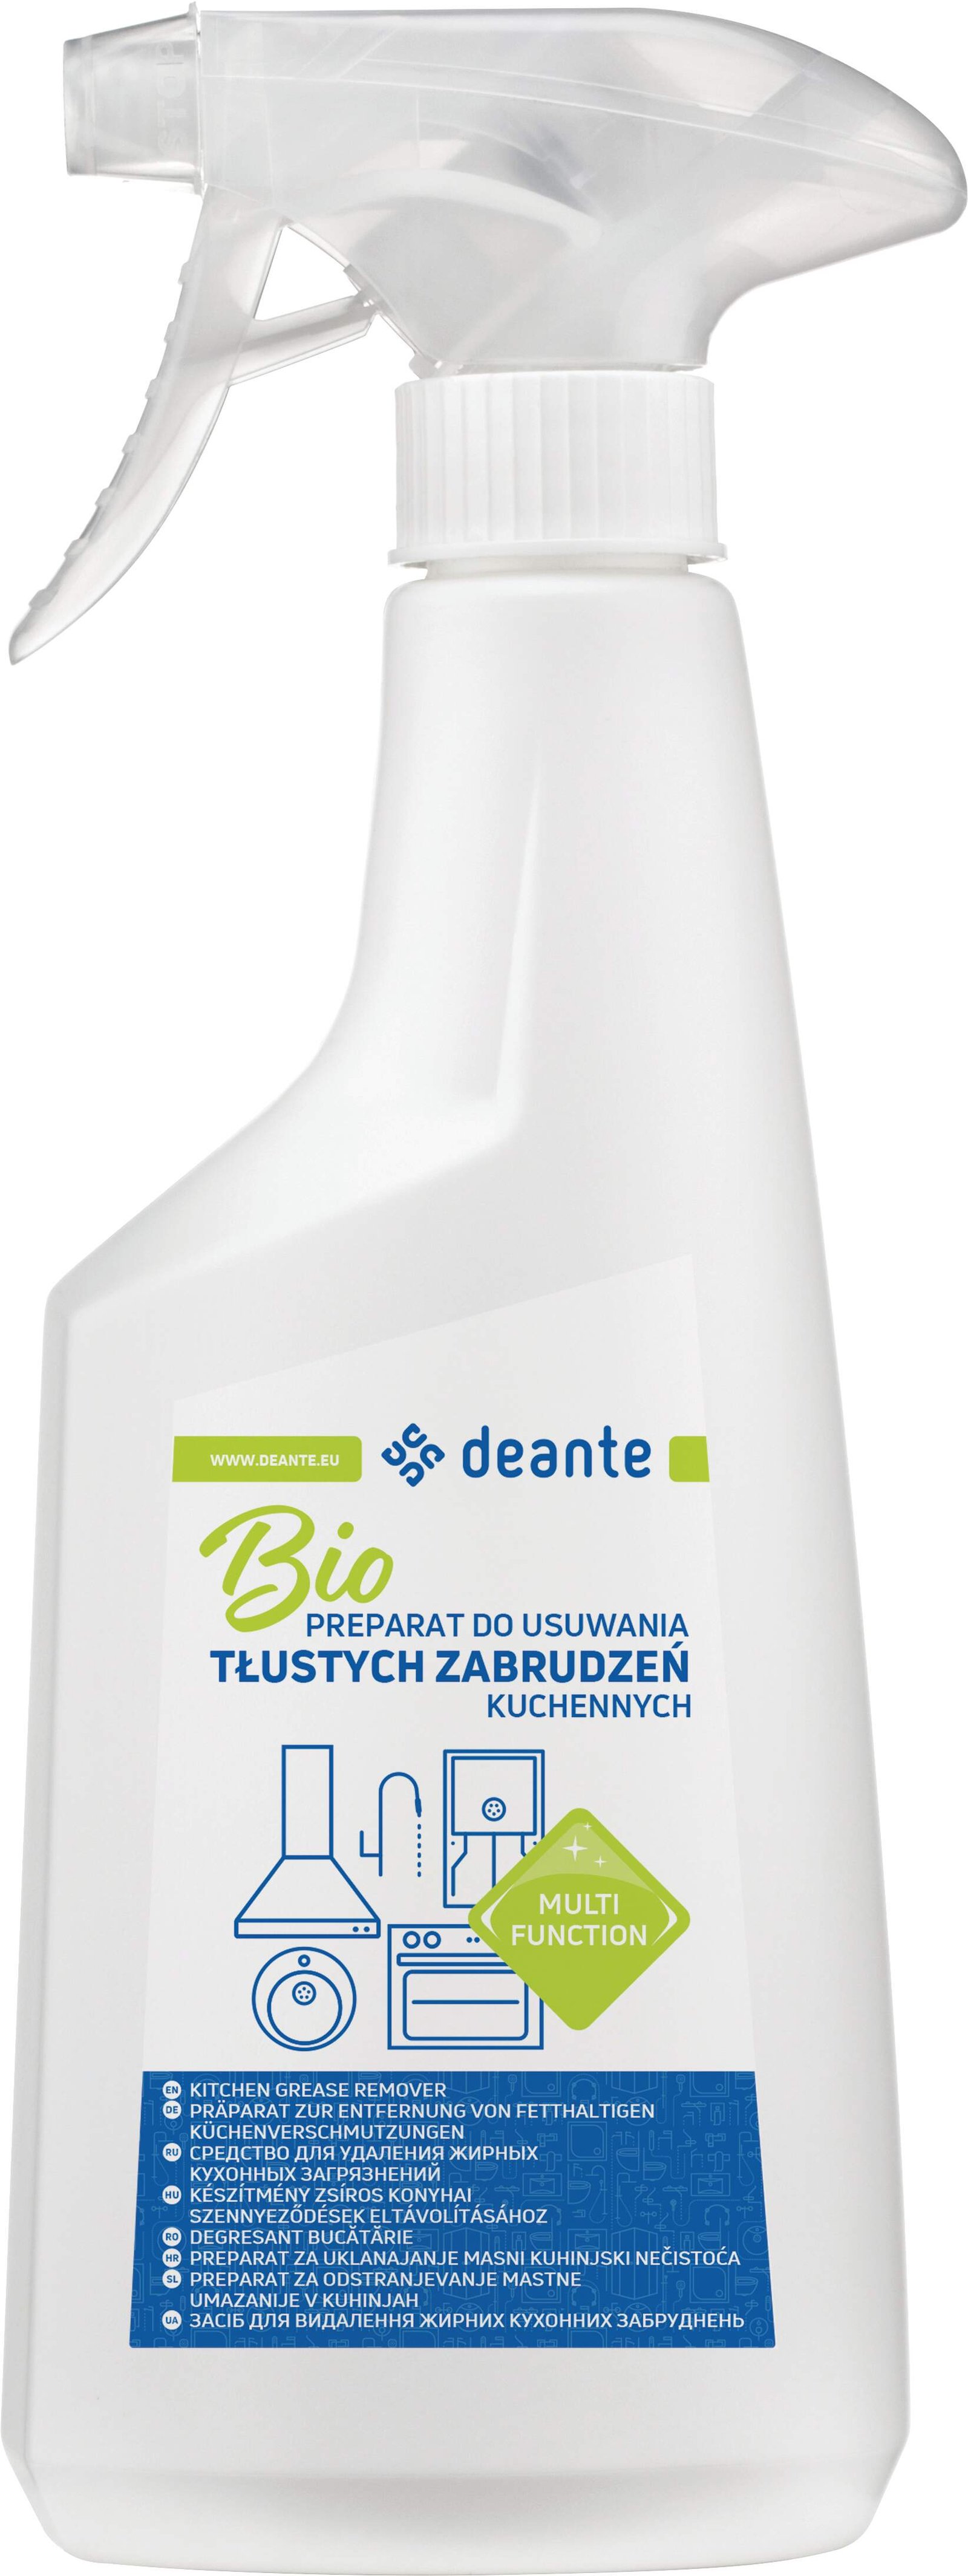 Deante Reinigungsmittel zur Entfernung von fetten Verunreinigungen, 500 ml (Modellnummer: ZZZ_000K)